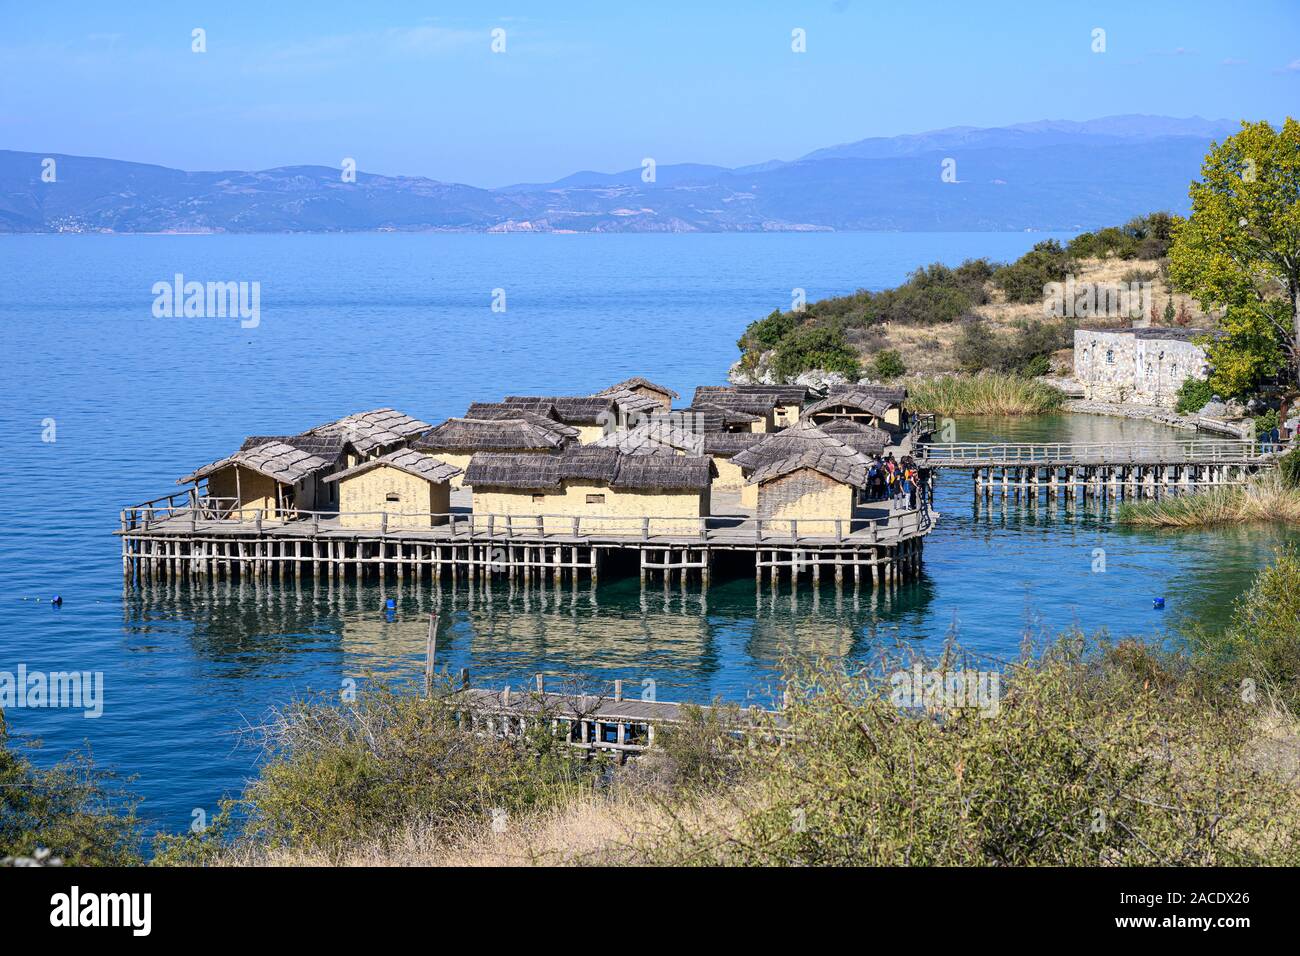 Die Bucht von Knochen Museum, einer rekonstruierten prähistorisches Dorf am See von Ohrid in der Nähe von Peshtani im Norden von Mazedonien, Europa. Stockfoto